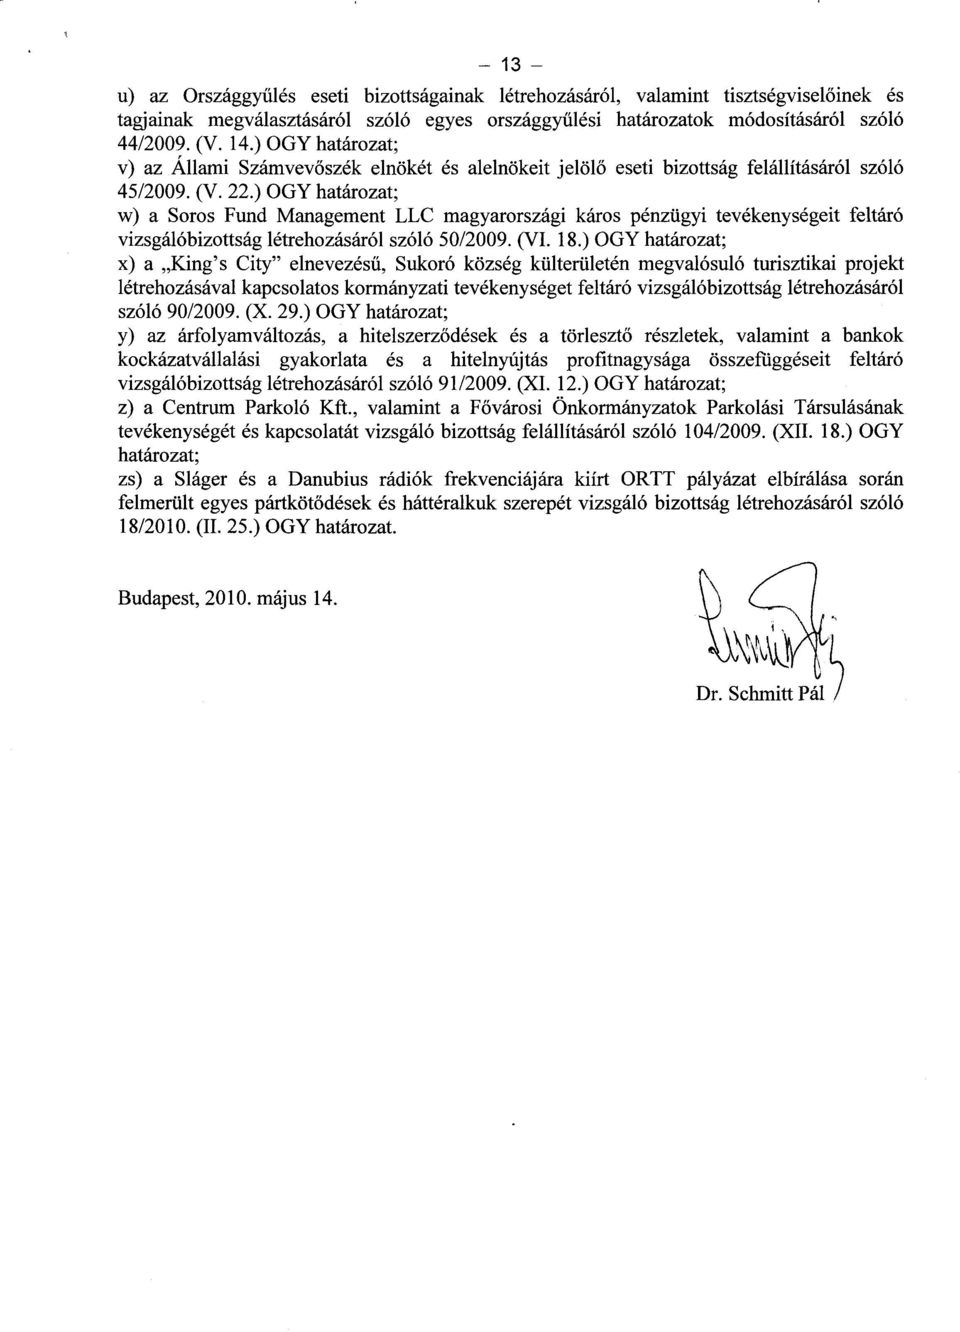 ) OGY határozat; w) a Soros Fund Management LLC magyarországi káros pénzügyi tevékenységeit feltáró vizsgálóbizottság létrehozásáról szóló 50/2009. (VI. 18.